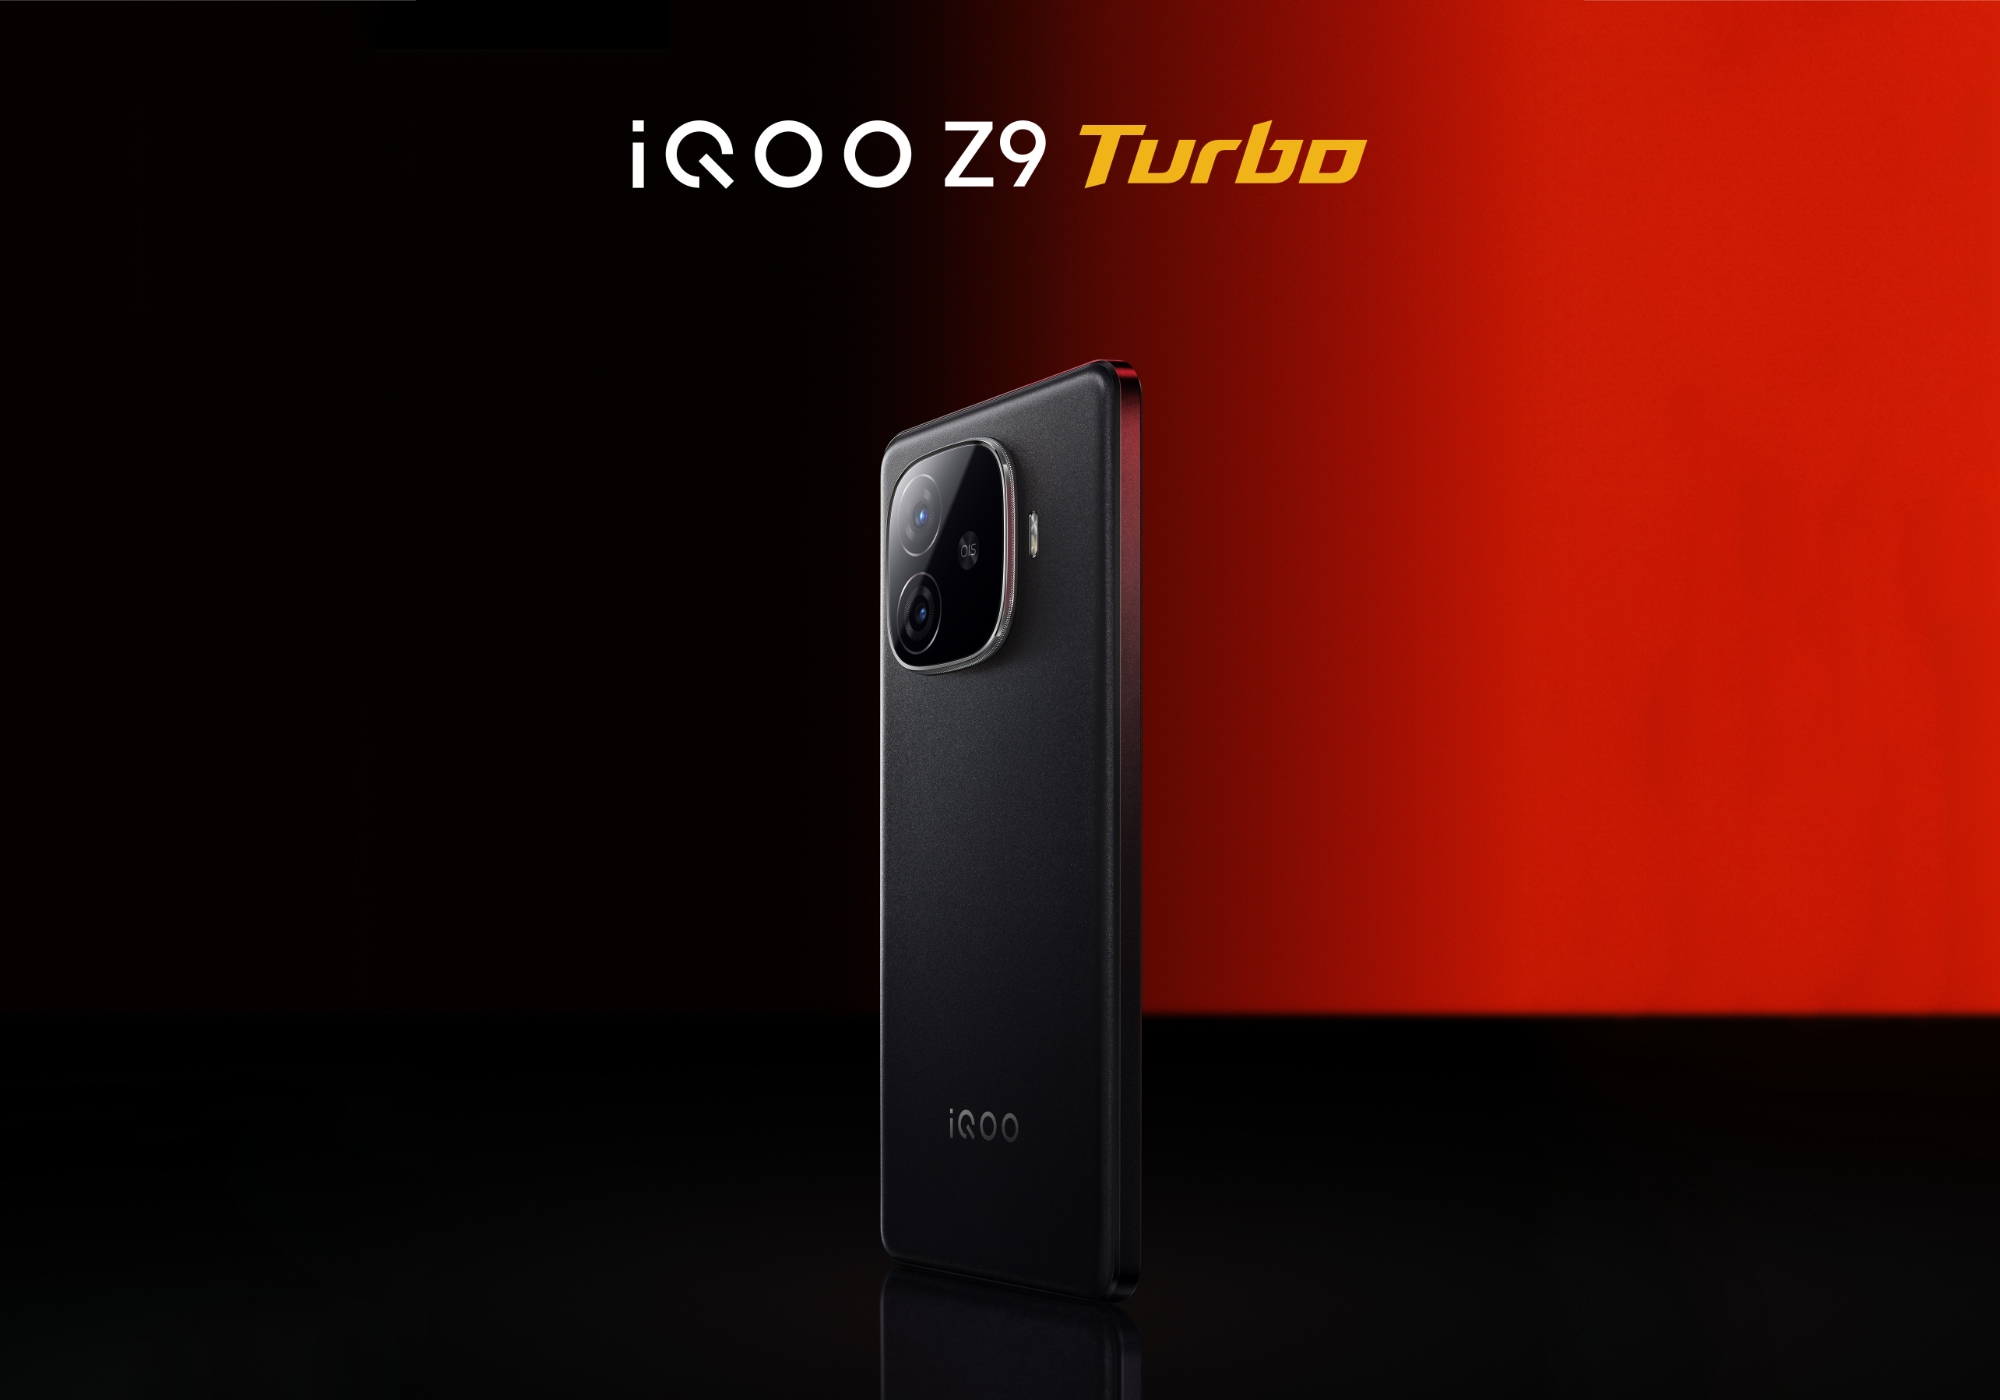 Uten å vente på presentasjonen: vivo avslørte utseendet til iQOO Z9 Turbo